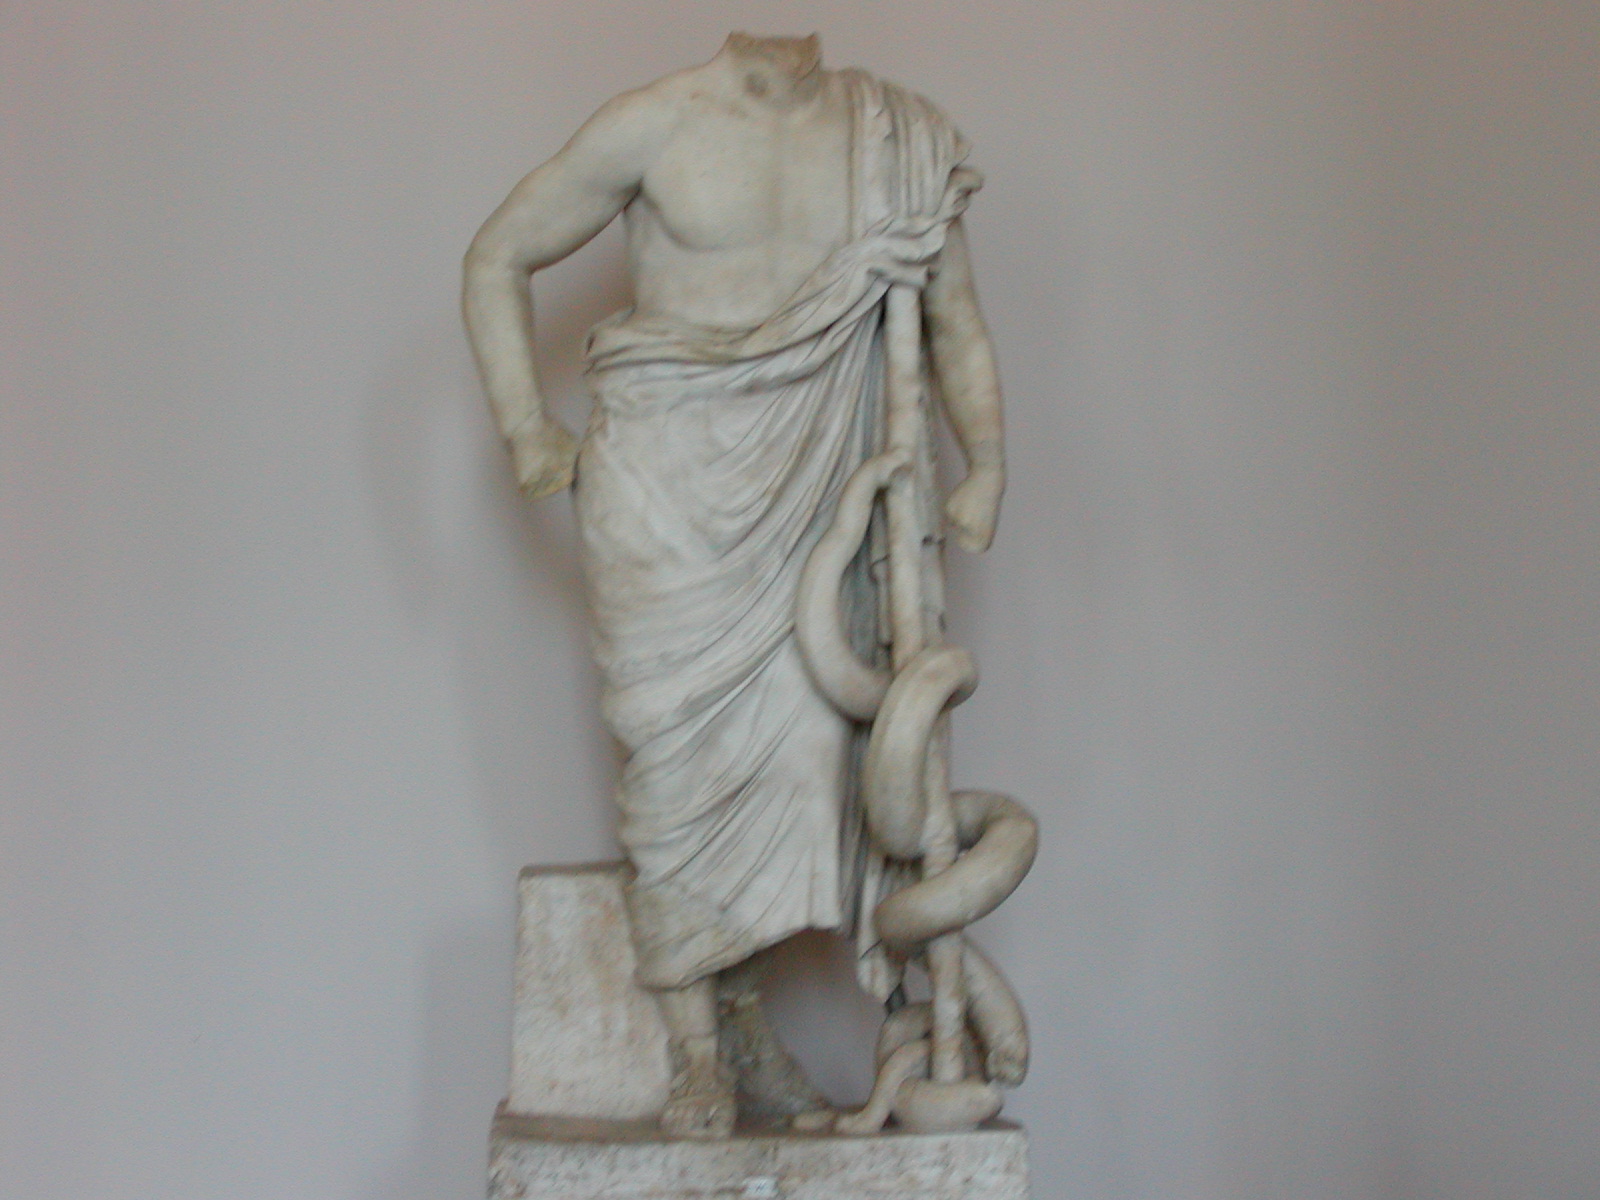 Sculpture, Pergamon museum